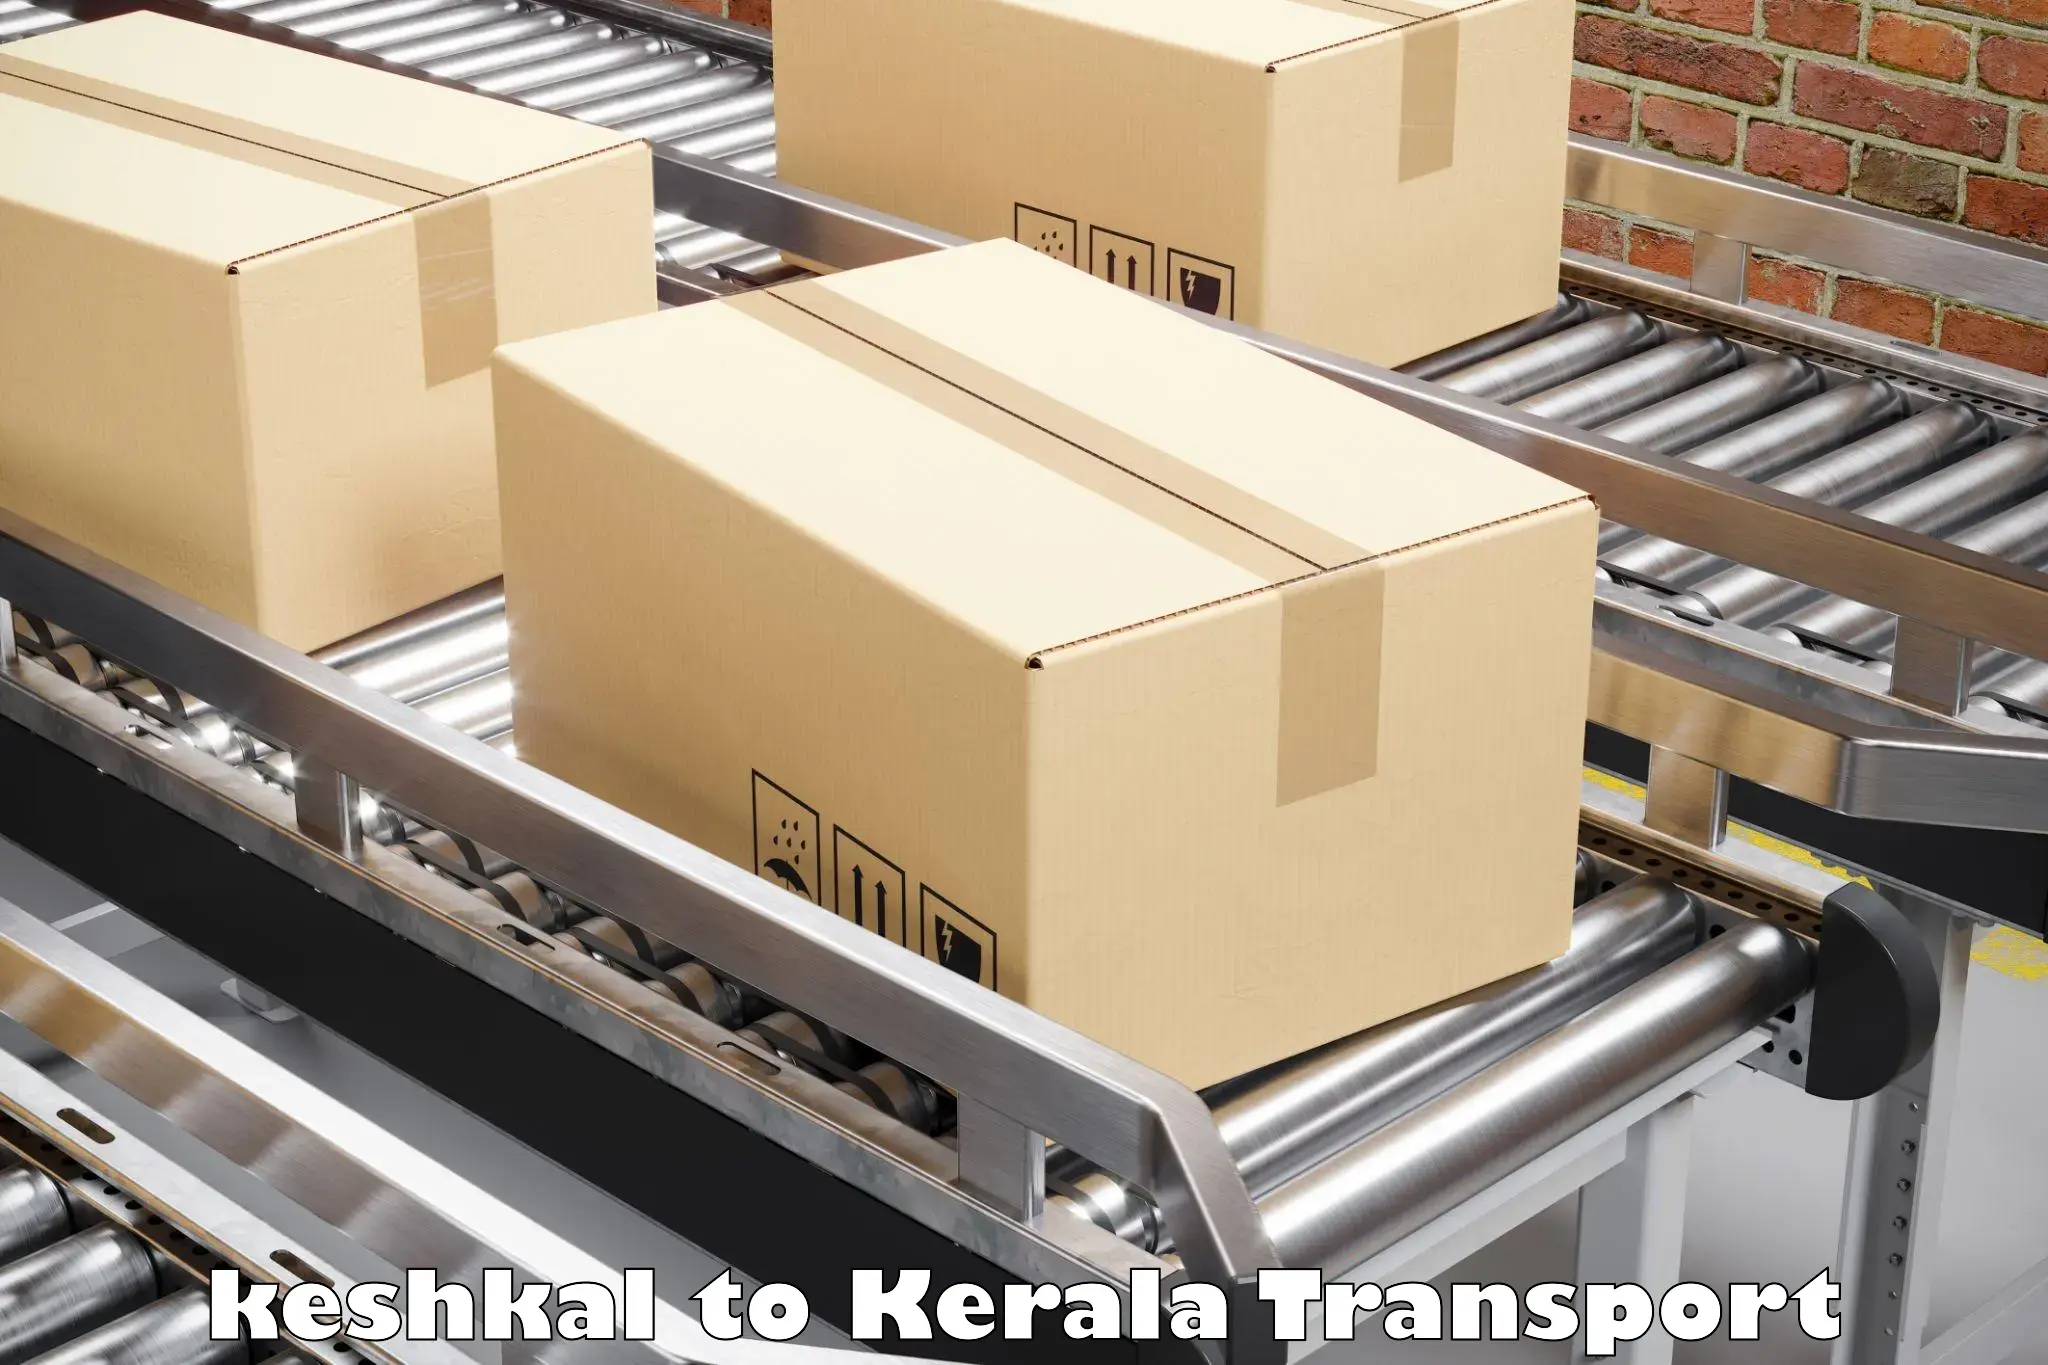 Scooty parcel in keshkal to Kerala